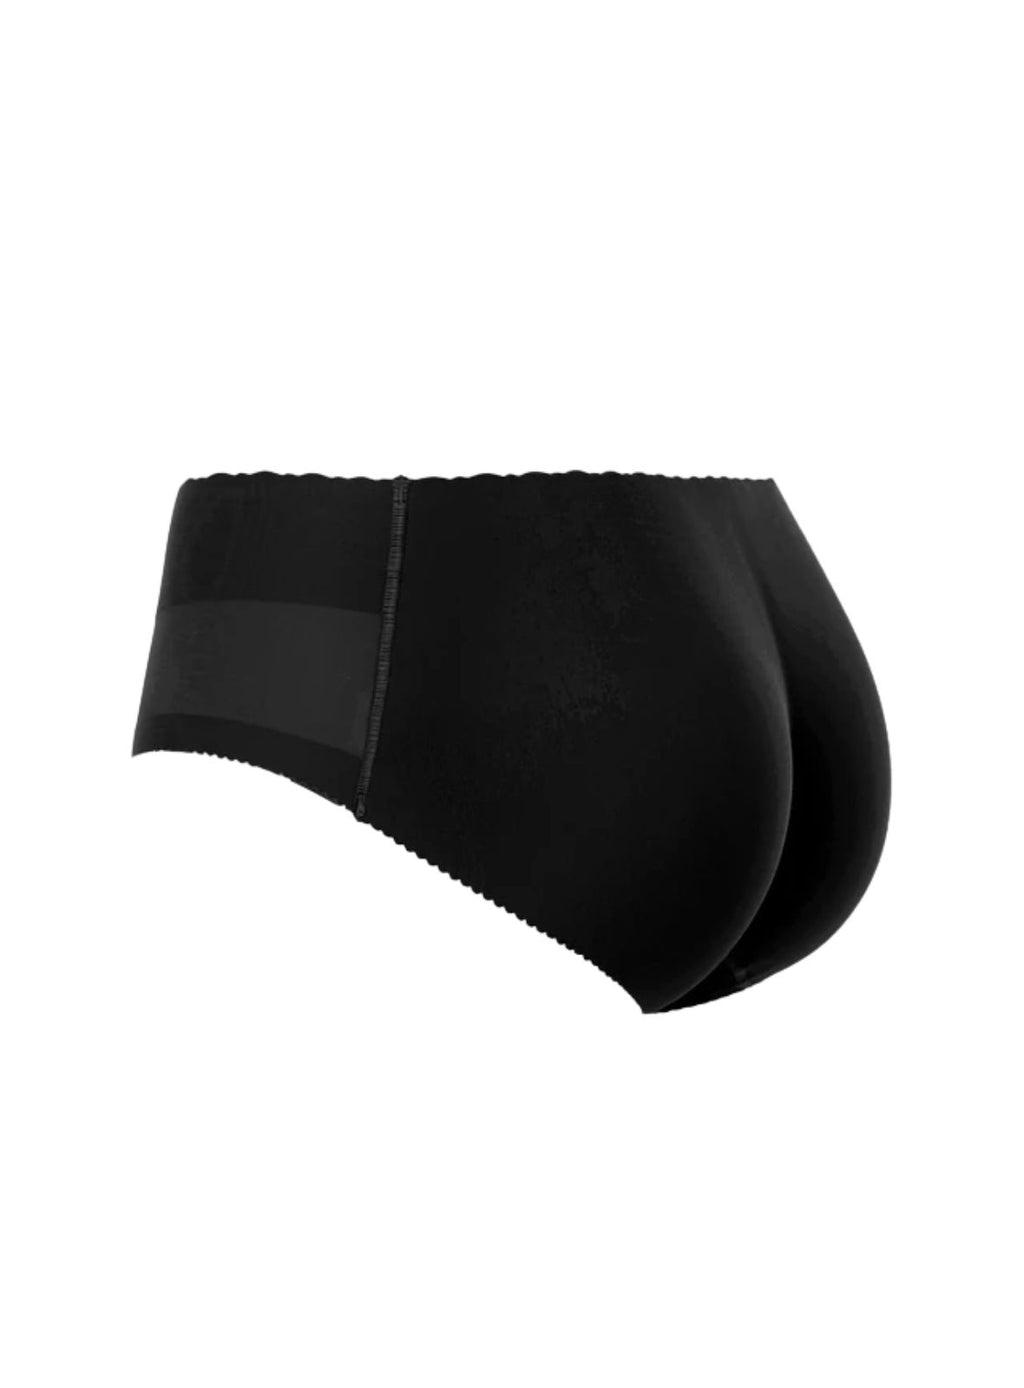 Kelsie Butt Lifter Low Waist Panties Seamless Padded Underwear in